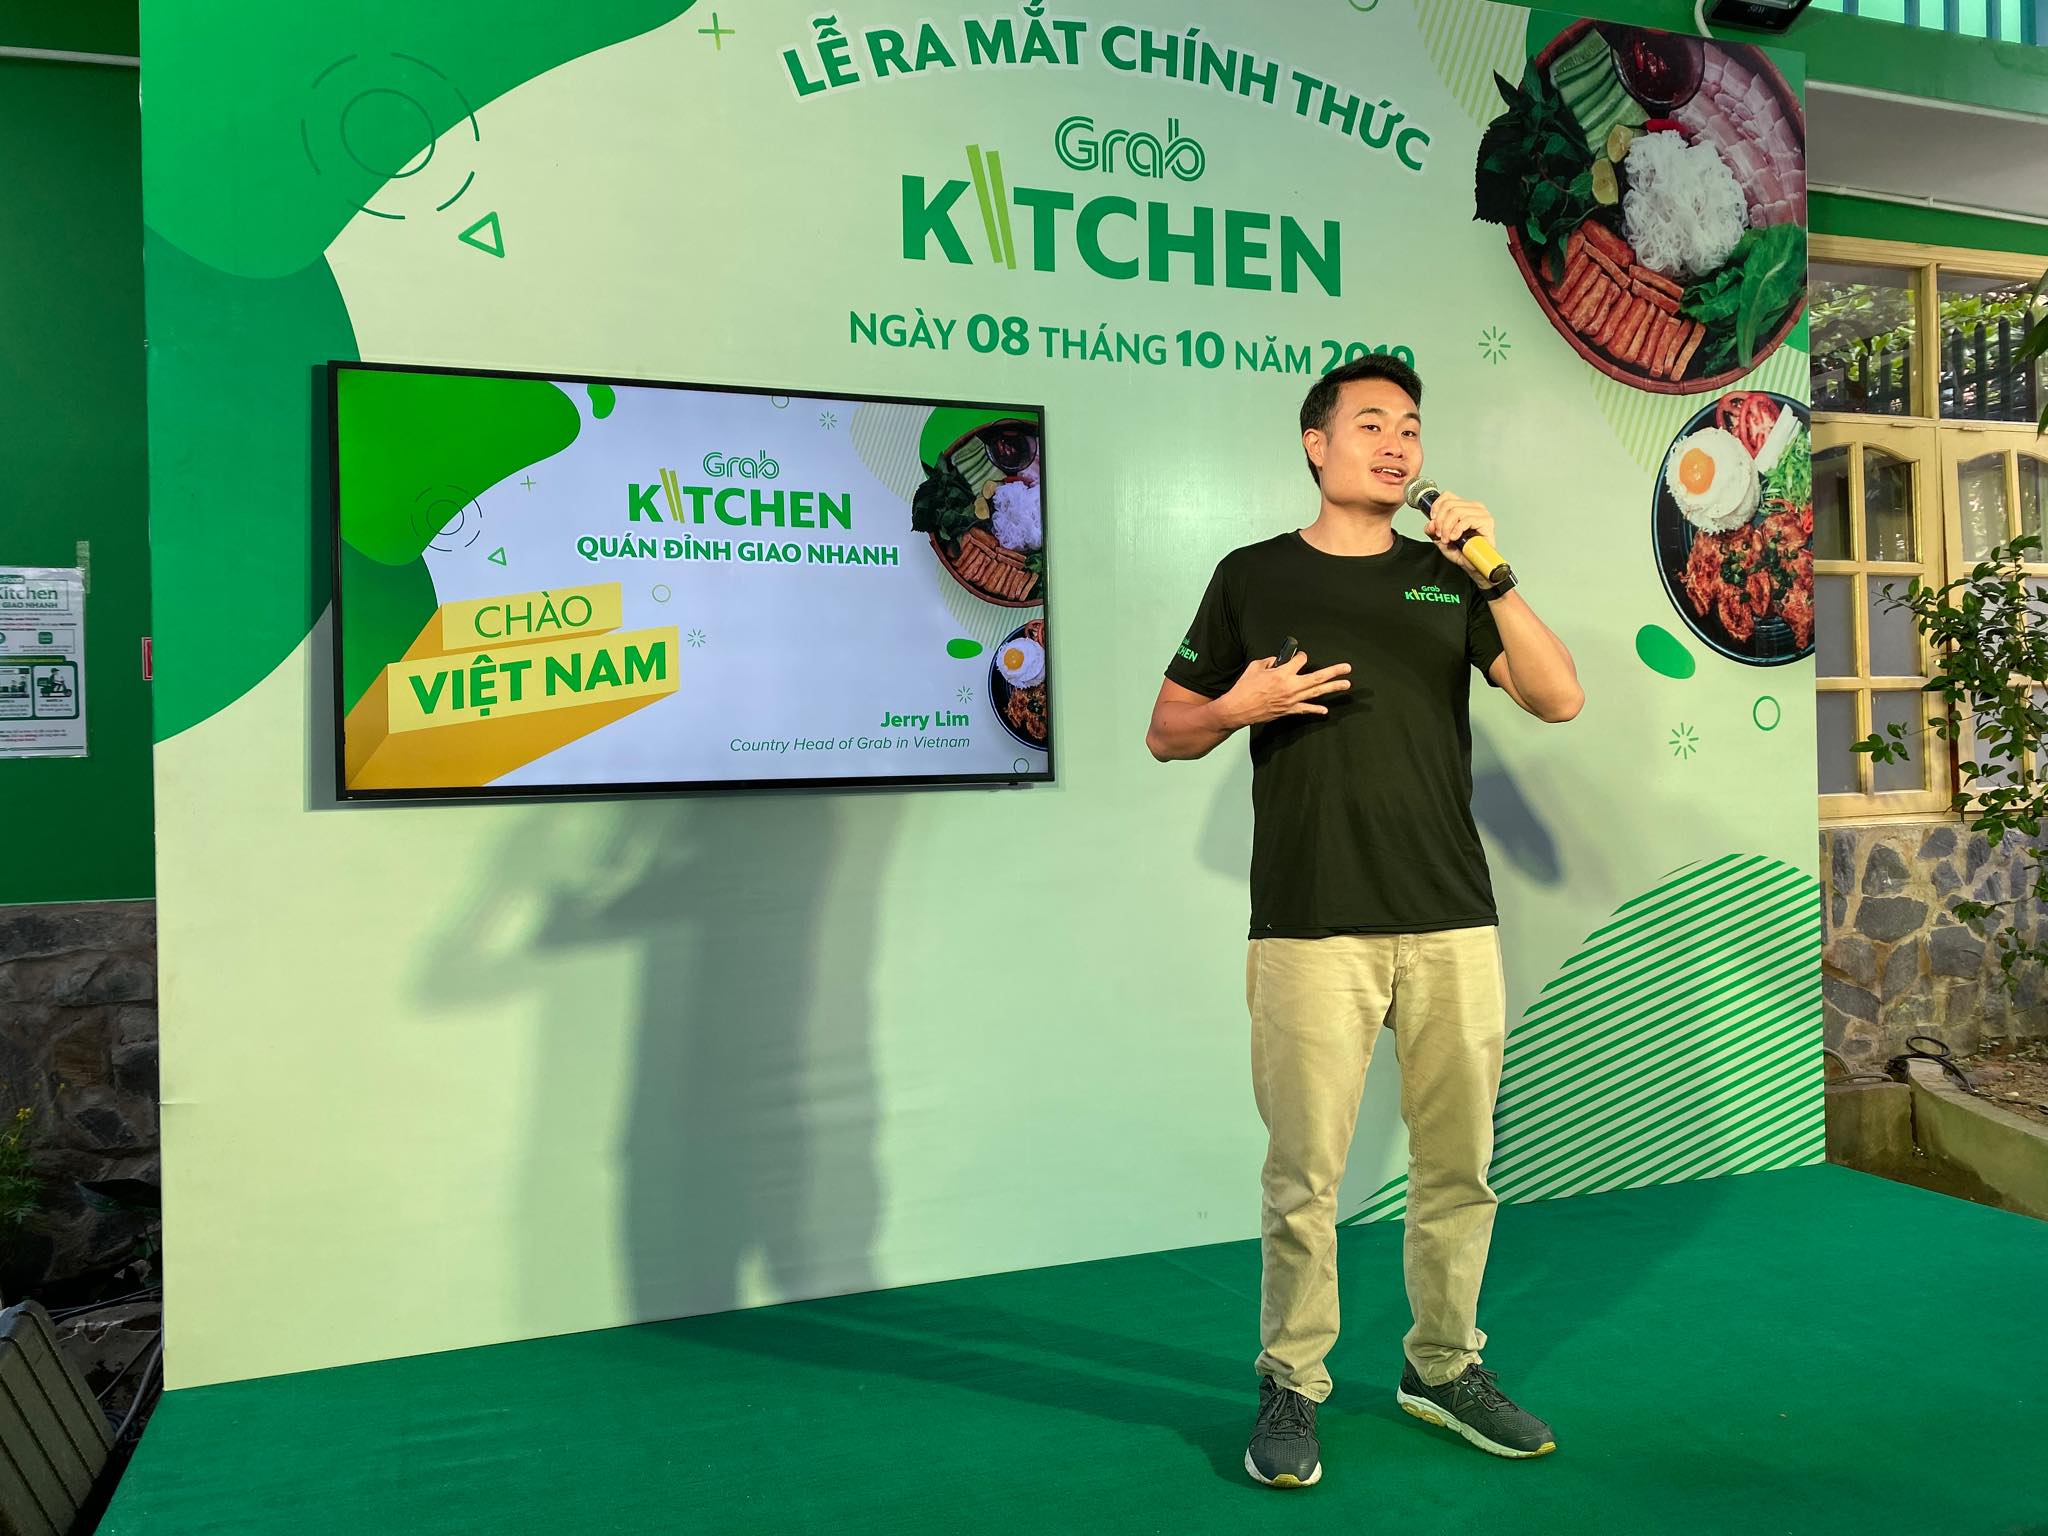 Grab chính thức ra mắt GrabKitchen tại TP.HCM, mở ra mô hình “căn bếp trung tâm” đầu tiên tại Việt Nam